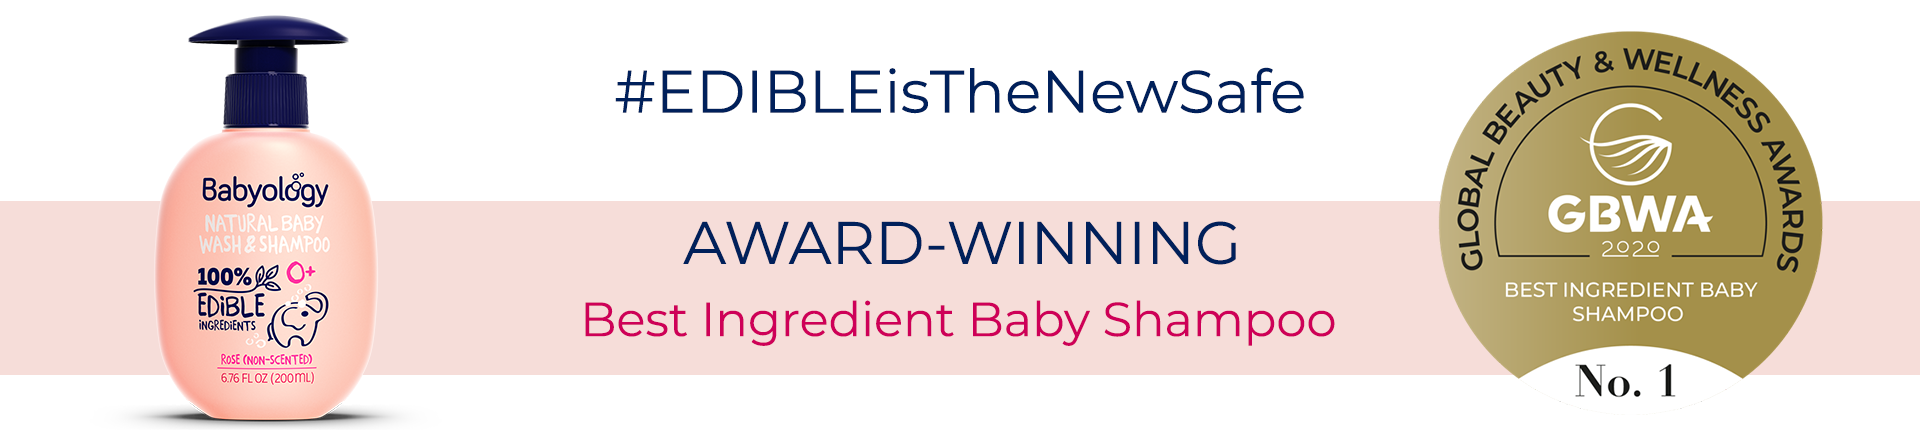 Best Ingredient Baby Shampoo Babyology